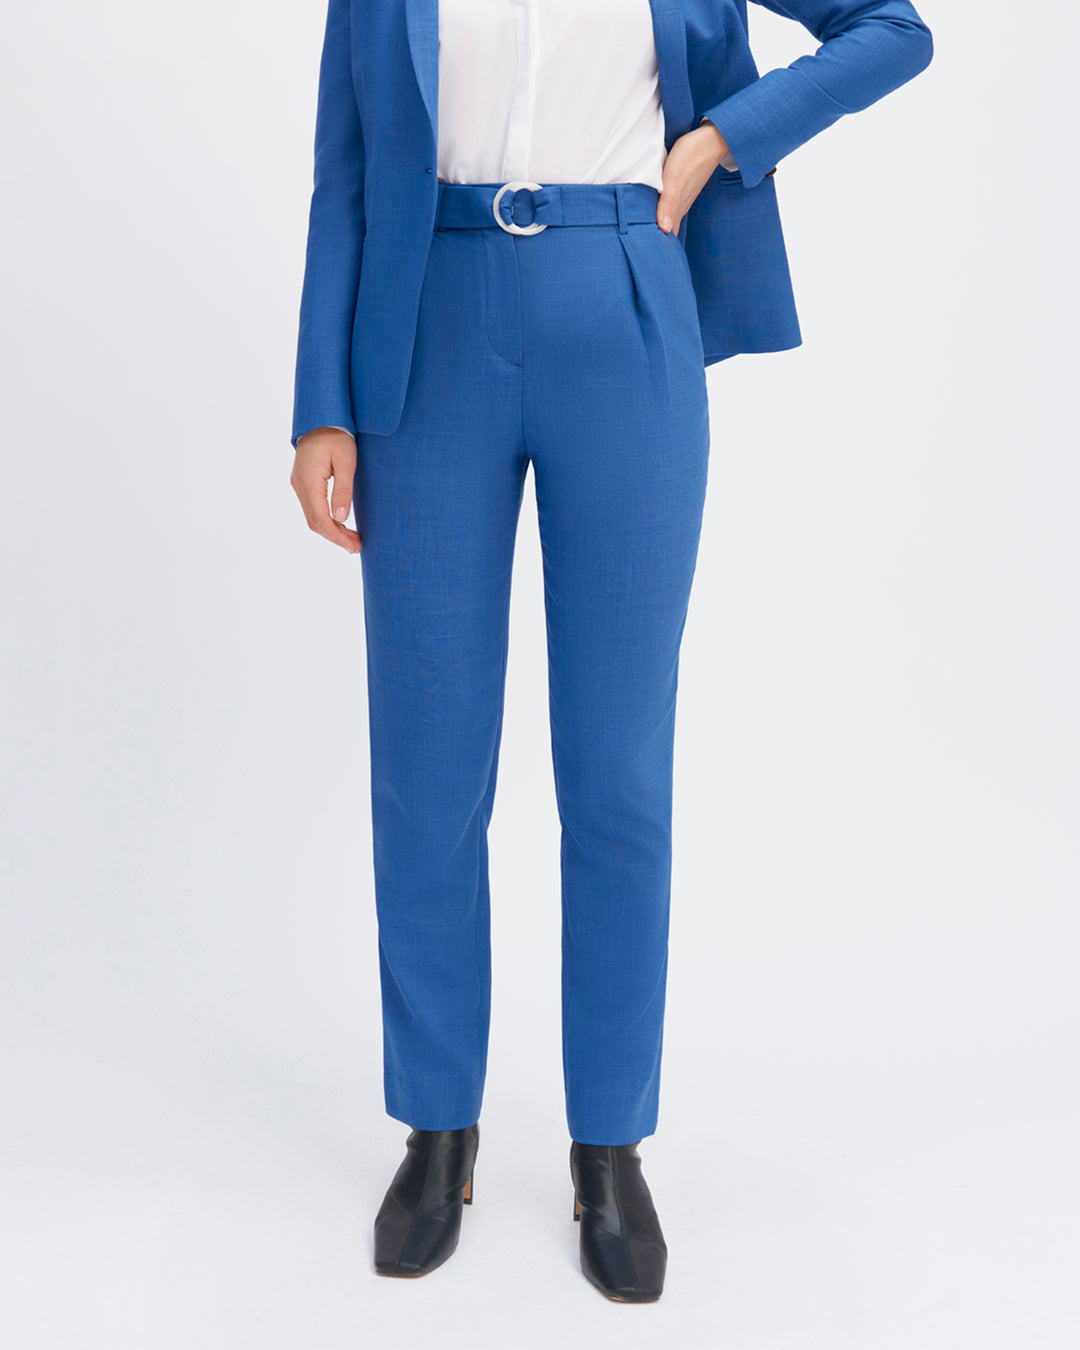 17H10-women's-waistcoats-paris-carrot-cut-high-waist-fold-front-7-8th-length-zipper-front.